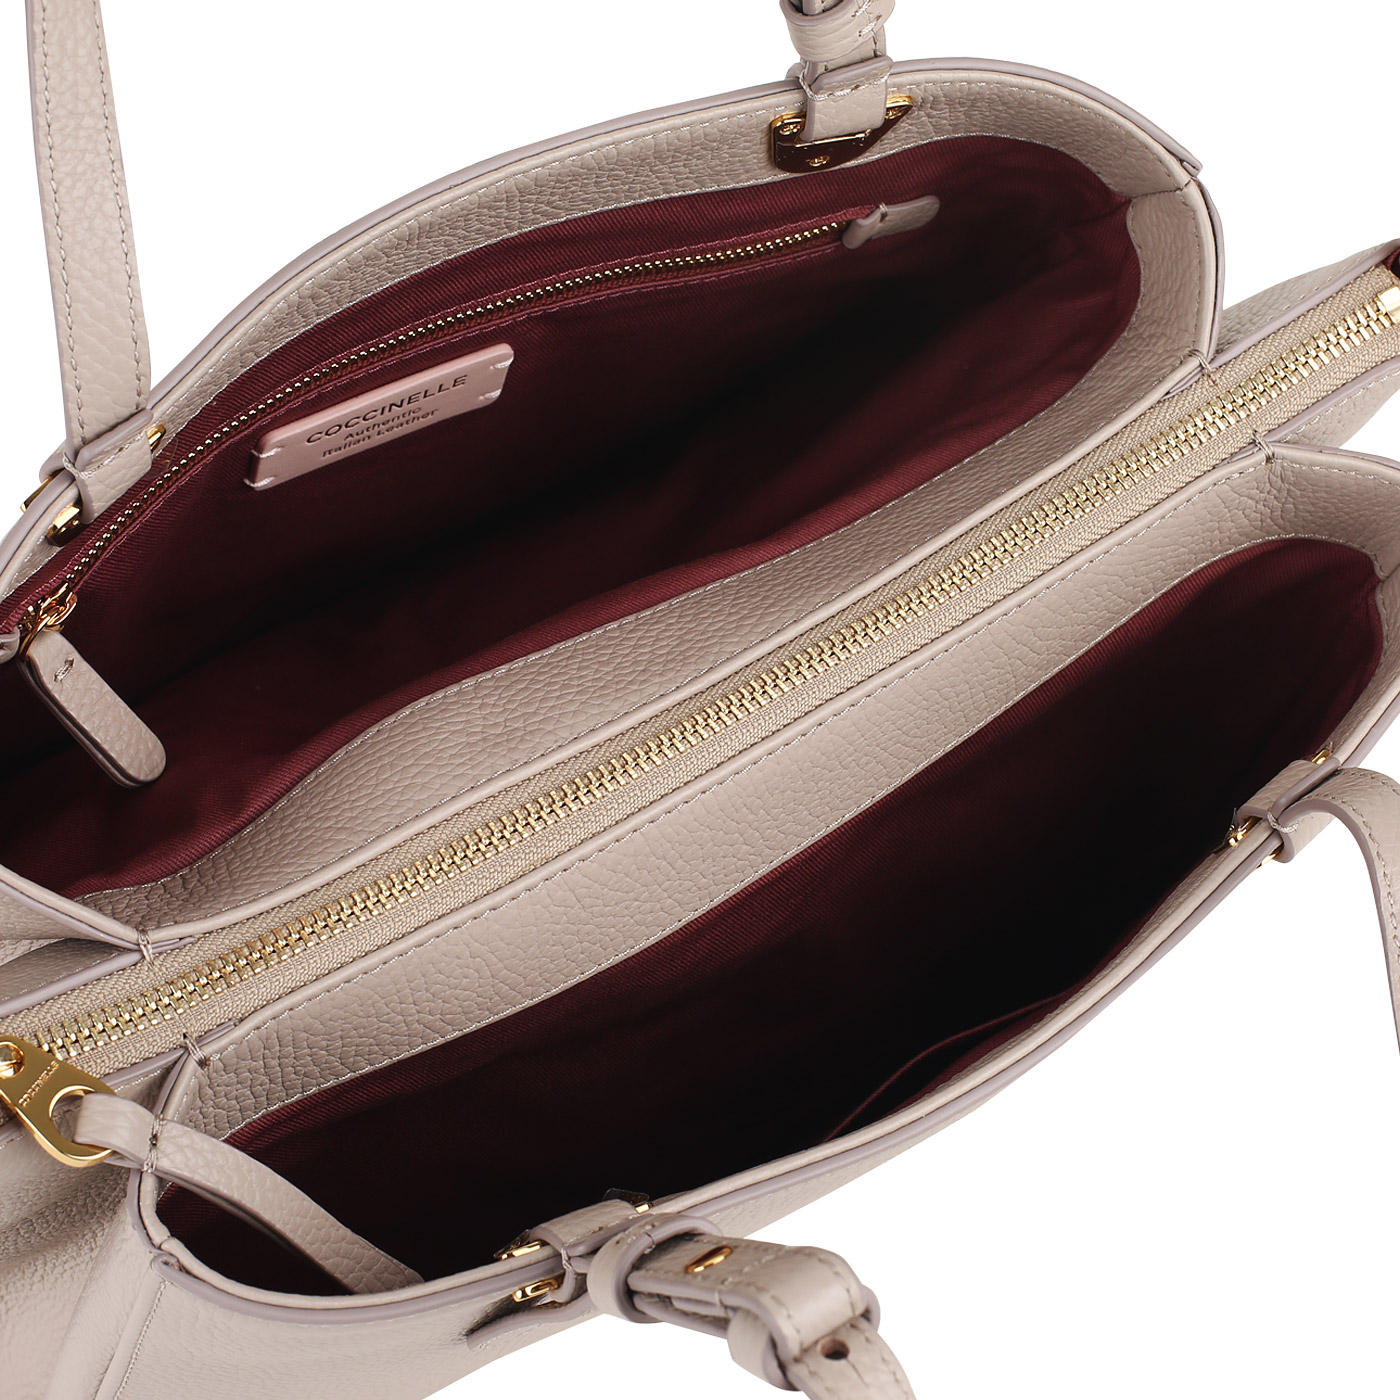 Кожаная сумочка с плечевым ремешком Coccinelle Lea